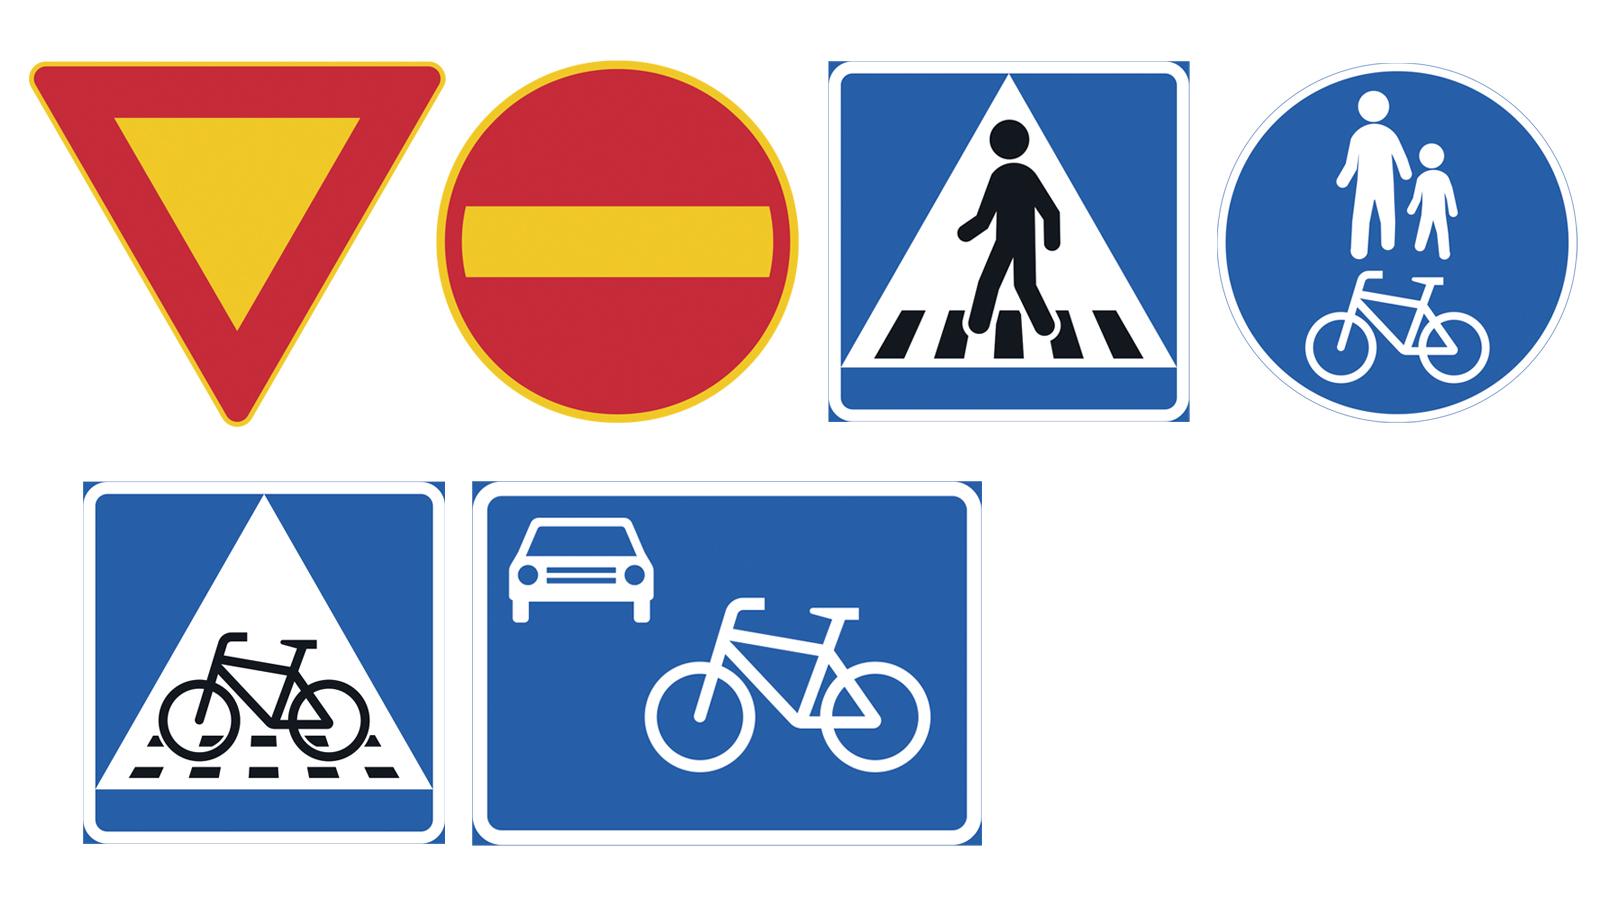 Liikennemerkit: kärkikolmio, kielletty ajosuunta, suojatie, yhdistetty jalankulkuväylä ja pyörätie, pyöräsuojatie, pyöräkatu.